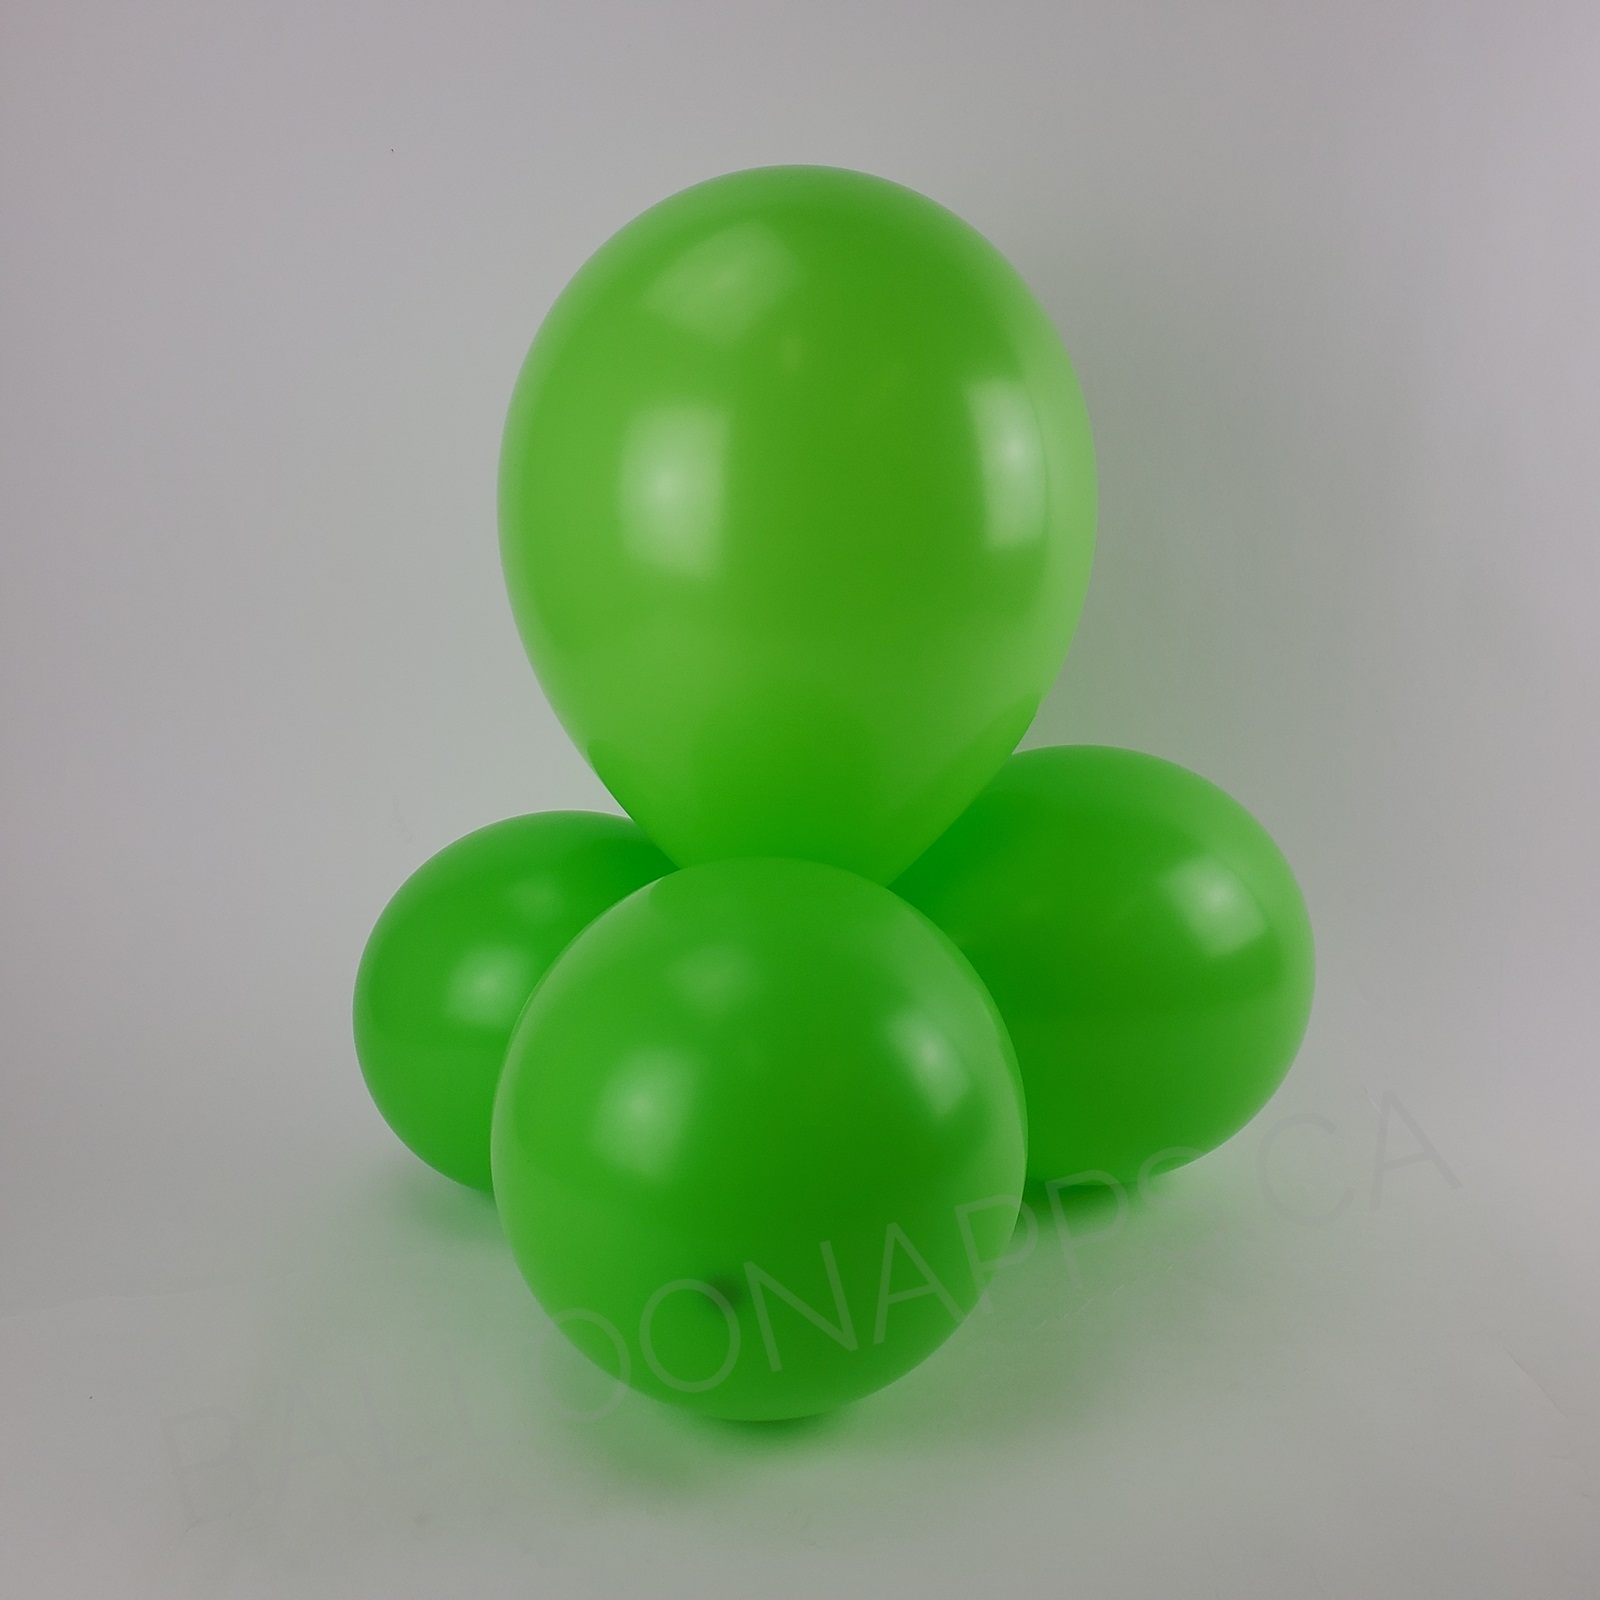 balloon texture Sempertex 160 Key Lime